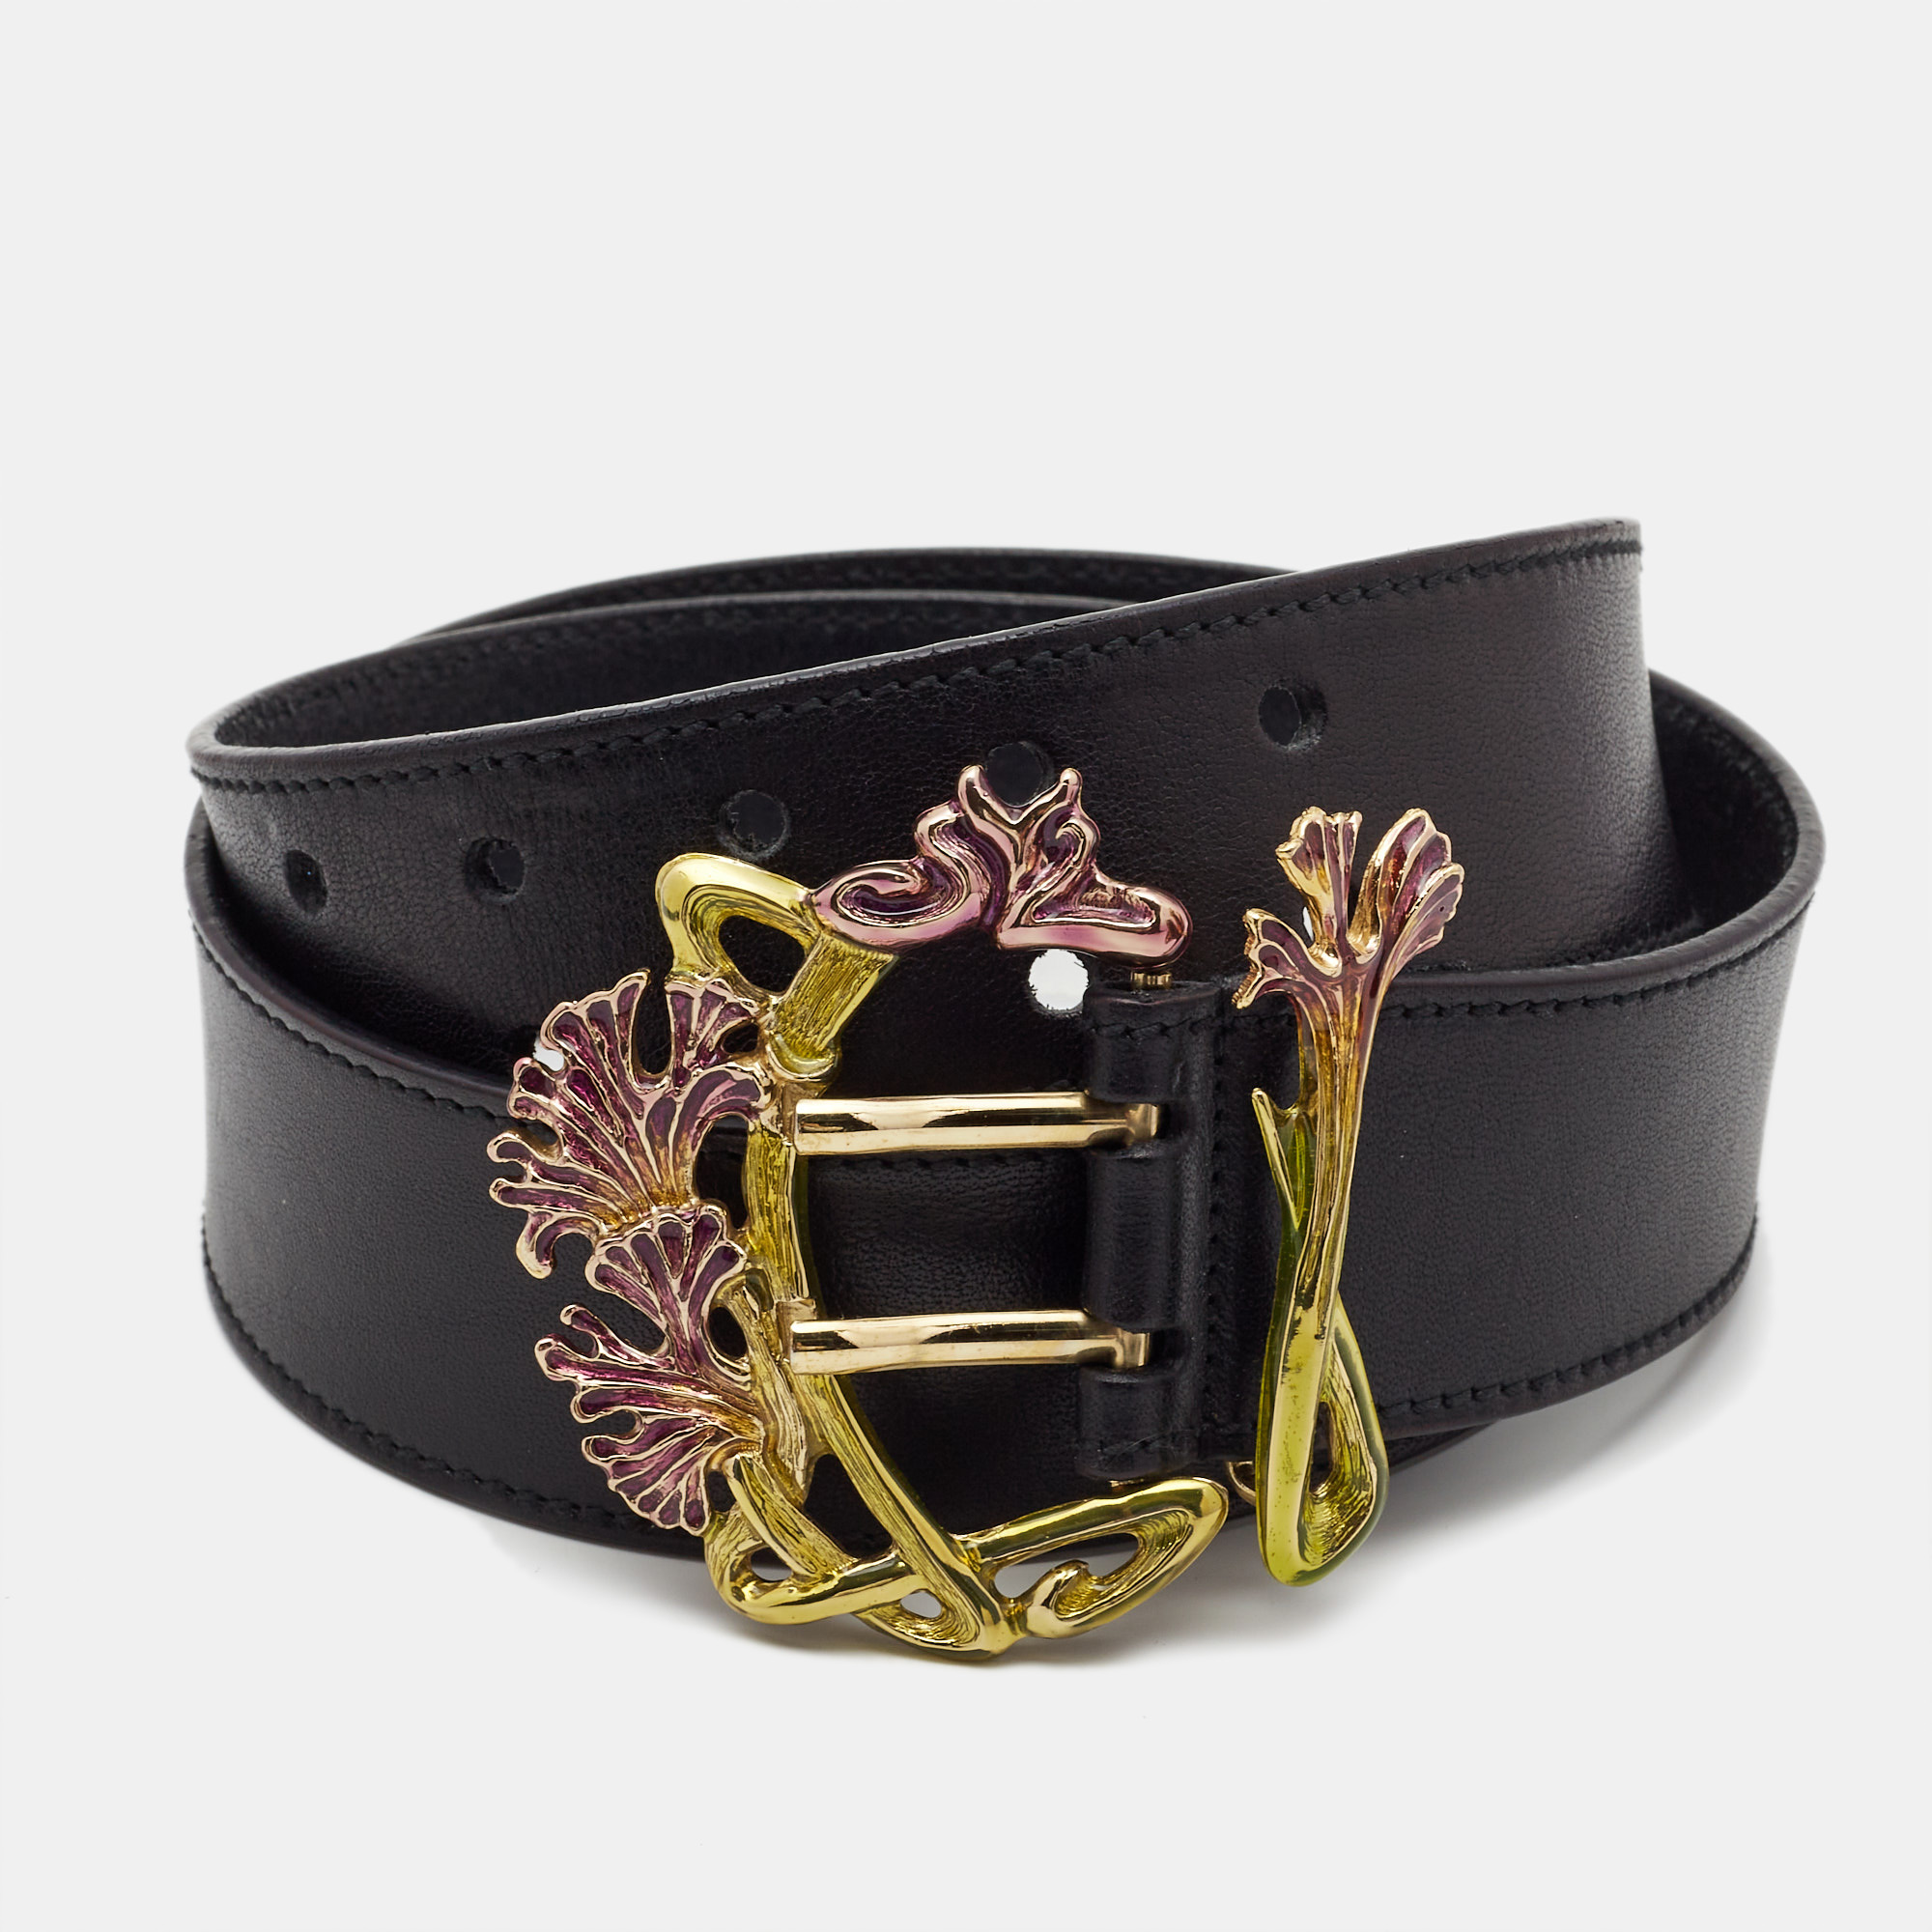 Yves saint laurent black leather buckle belt 90cm